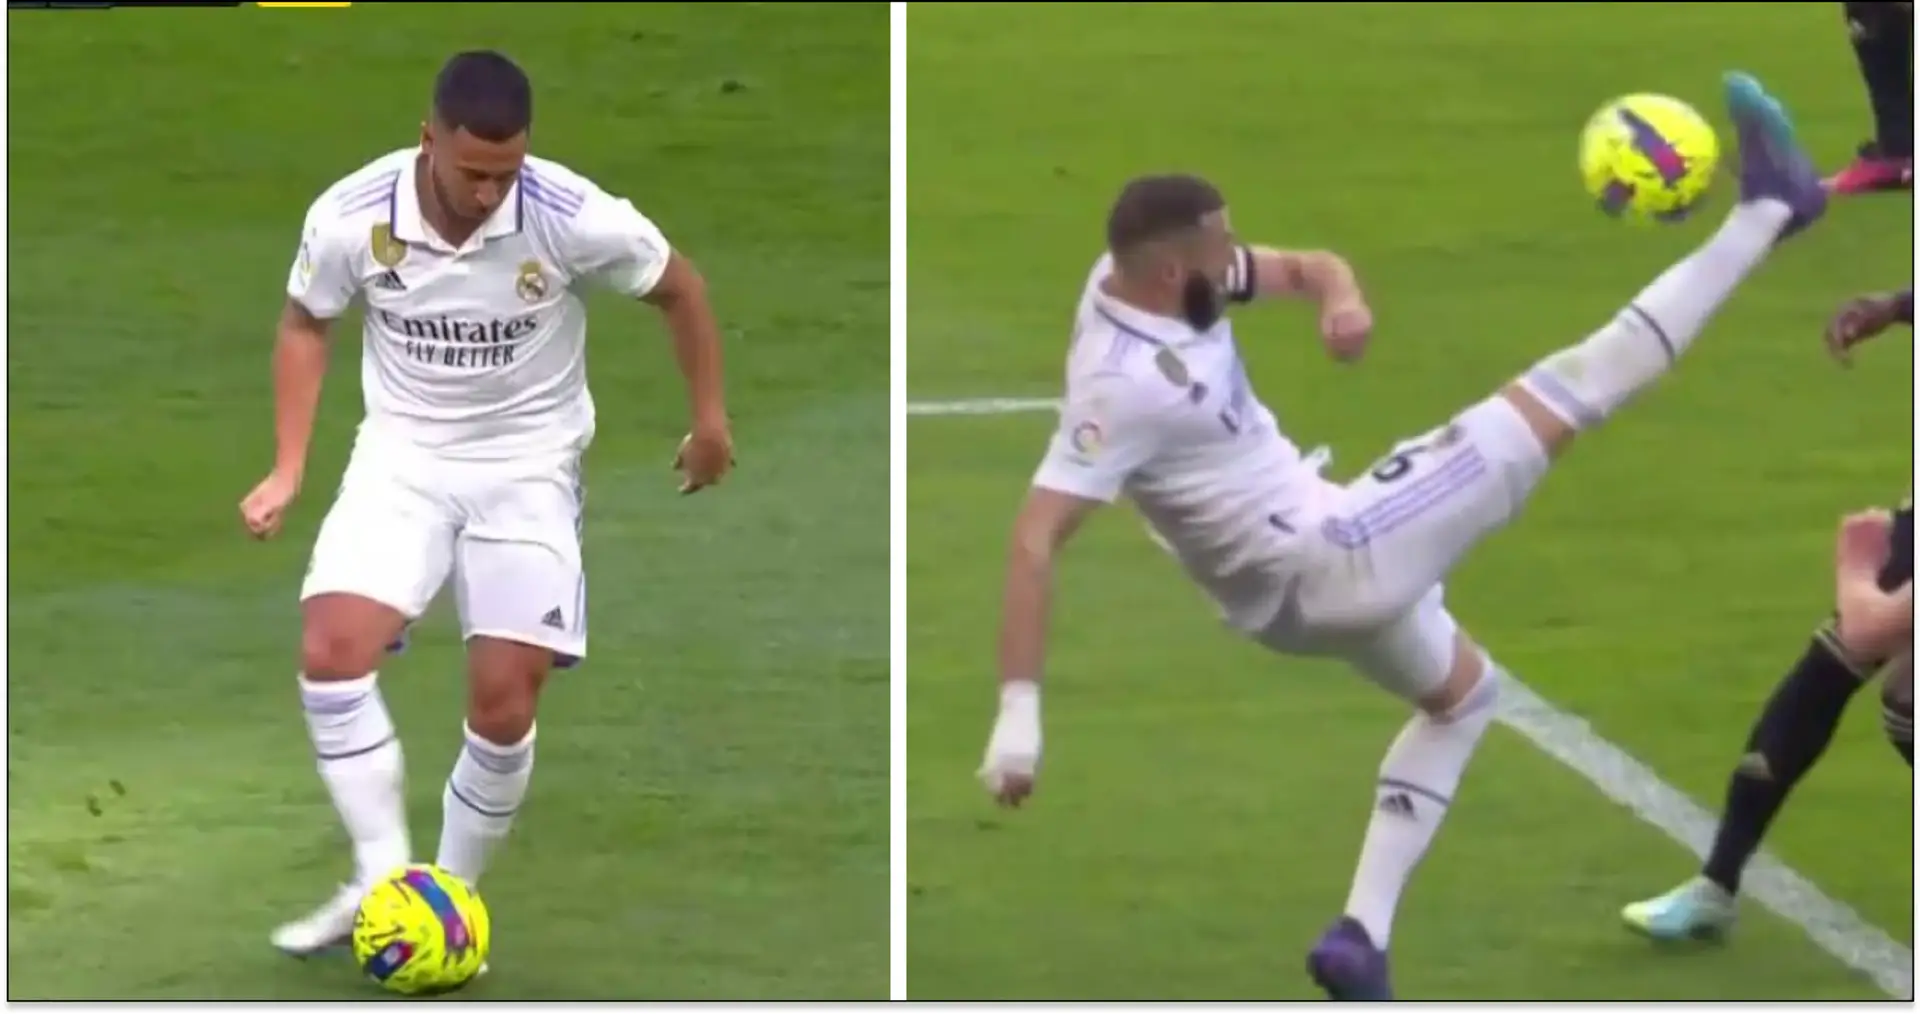 Hommage à Arbeloa, la passe décisive de Hazard et 5 autres meilleures images de la victoire contre Valladolid